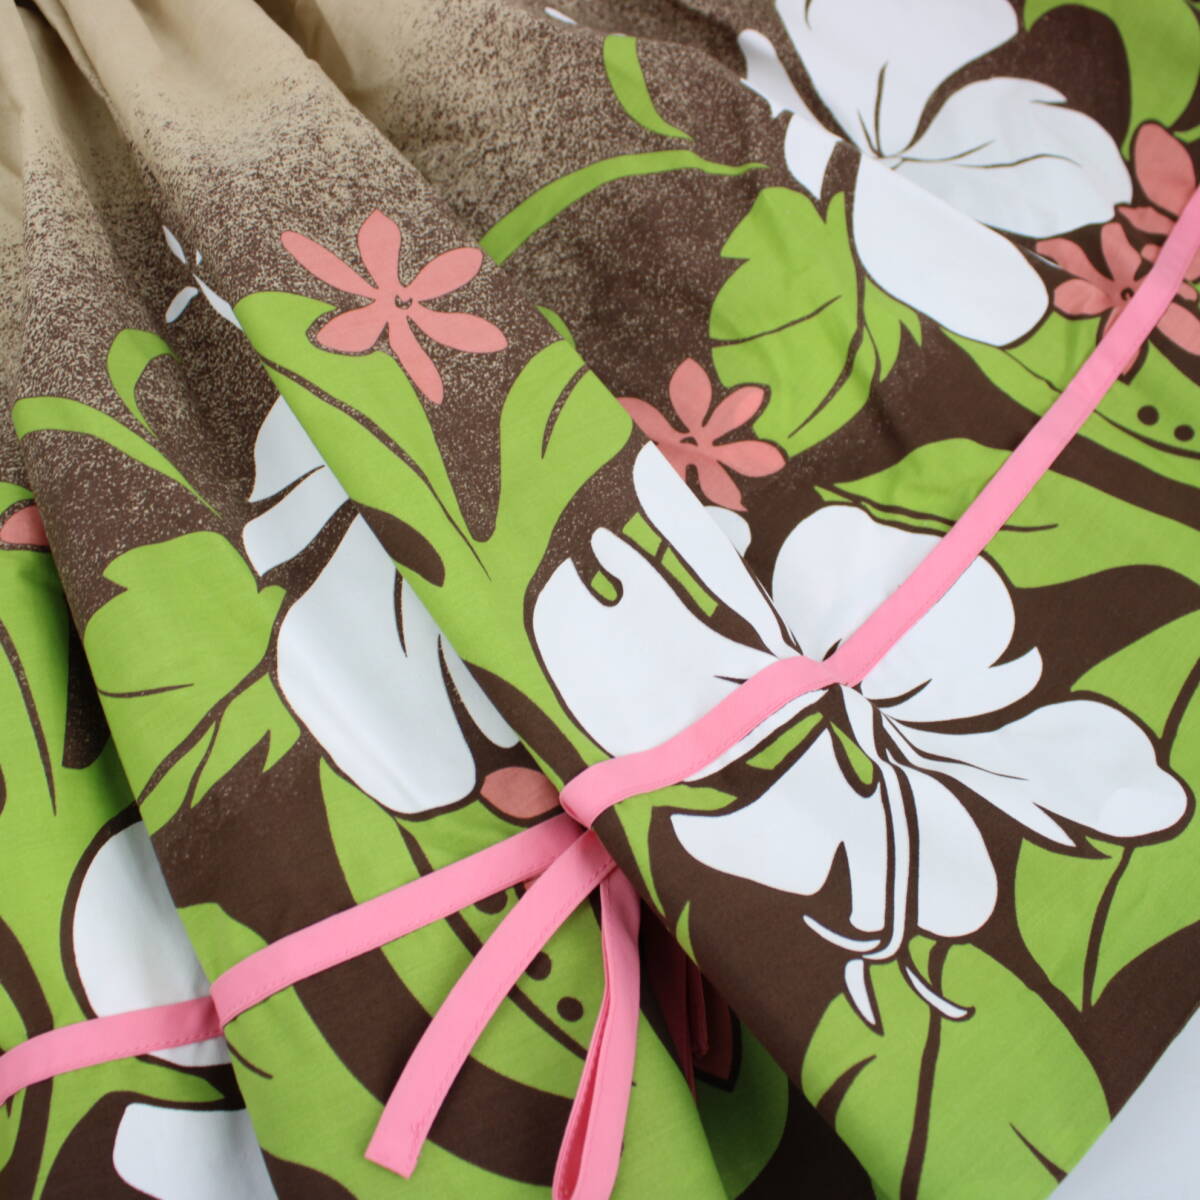 [ бесплатная доставка ][ хула для костюм превосходный товар ] бежевый ~ оттенок коричневого белый гибискус рисунок юбка пау Hawaiian flair юбка aro - 